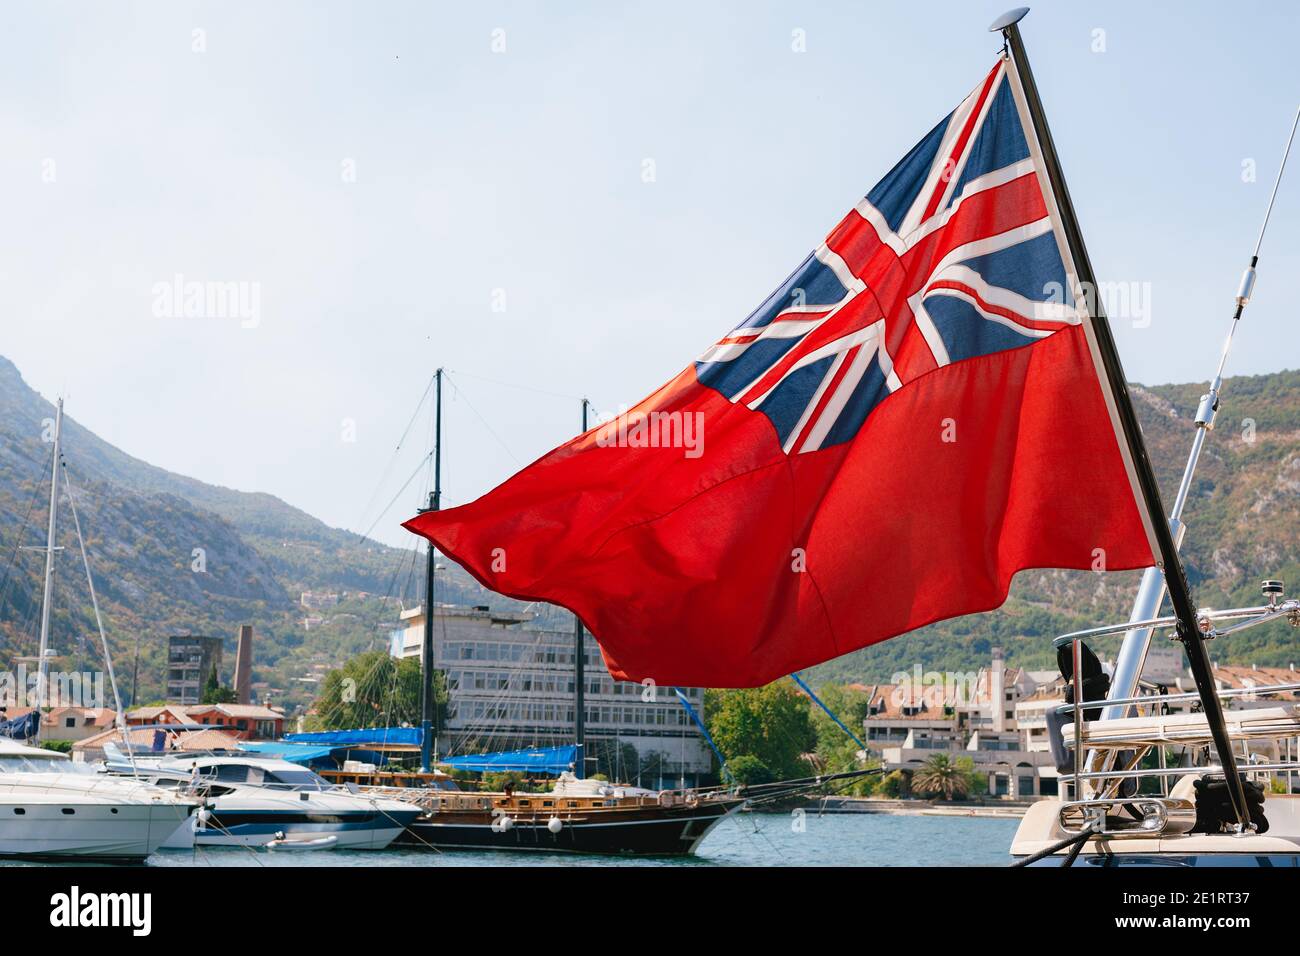 Bộ sưu tập hình ảnh chất lượng cao của du thuyền hiệu cờ xanh và hình nghệ thuật sẽ khiến bạn phải trầm trồ thán phục. Với cờ với nền đỏ và liên hiệp Anh là bối cảnh, những hình ảnh này khiến người xem cảm thấy thích thú và hứng thú. Hãy xem ảnh và cảm nhận sự đẹp đẽ và tinh tế của chúng.